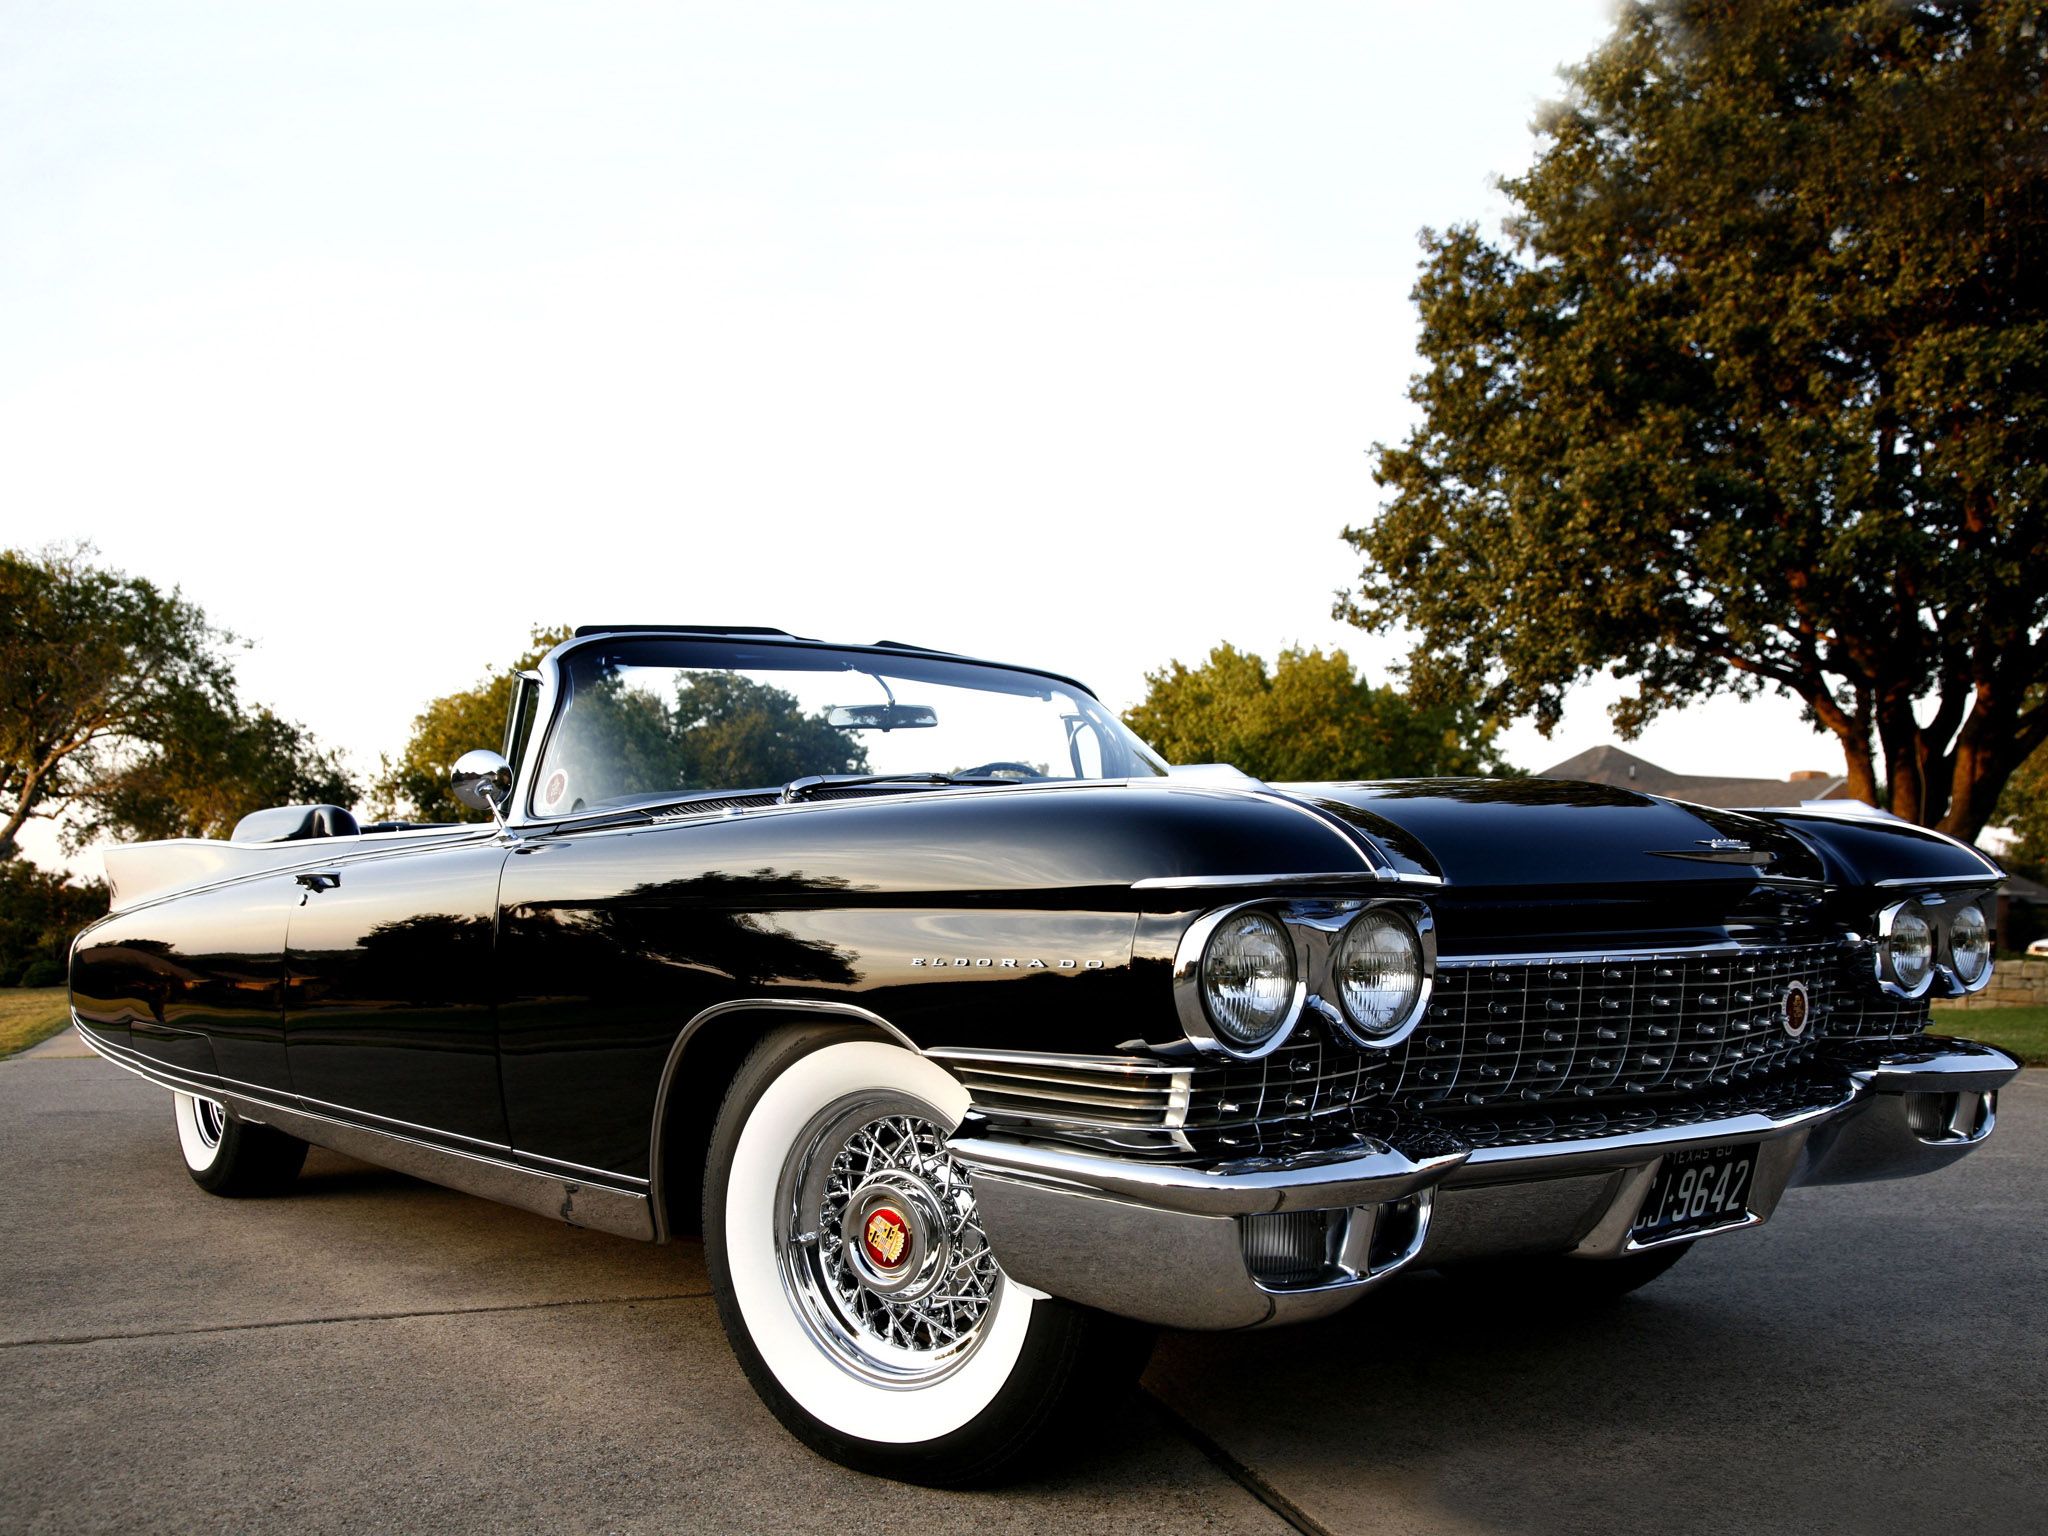 Cadillac Eldorado 1960 - image #141